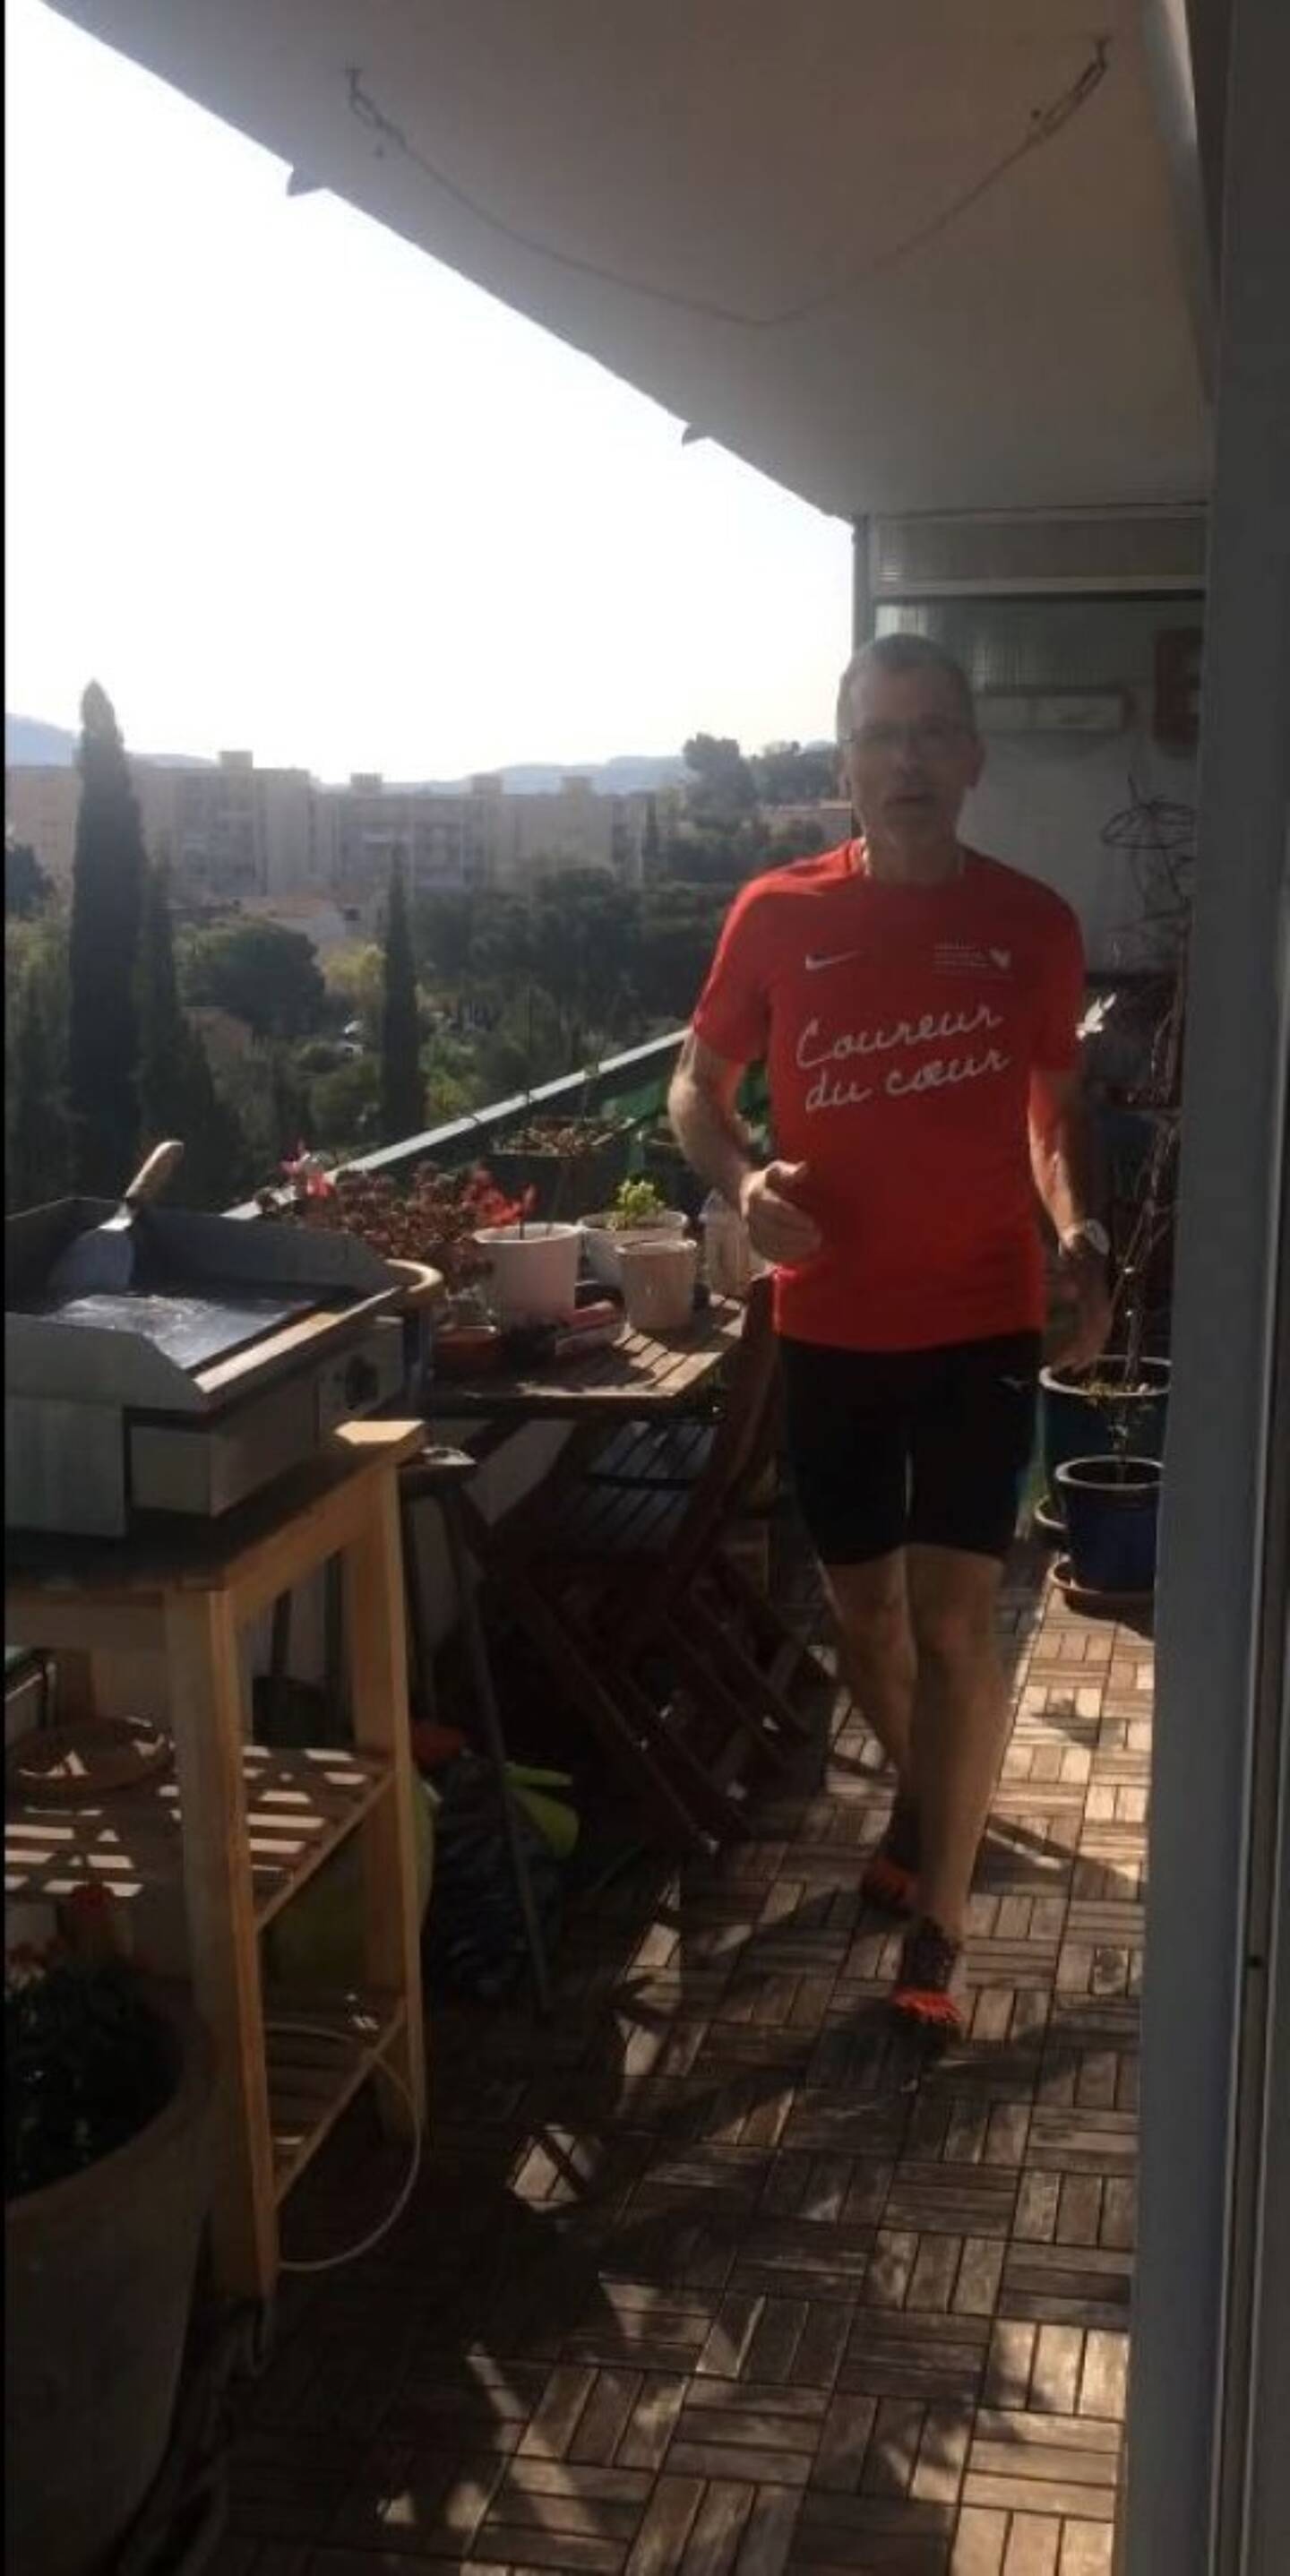 En plein confinement, Christian avait couru 4h30 sur son balcon pour l’association Mécénat chirurgie cardiaque.